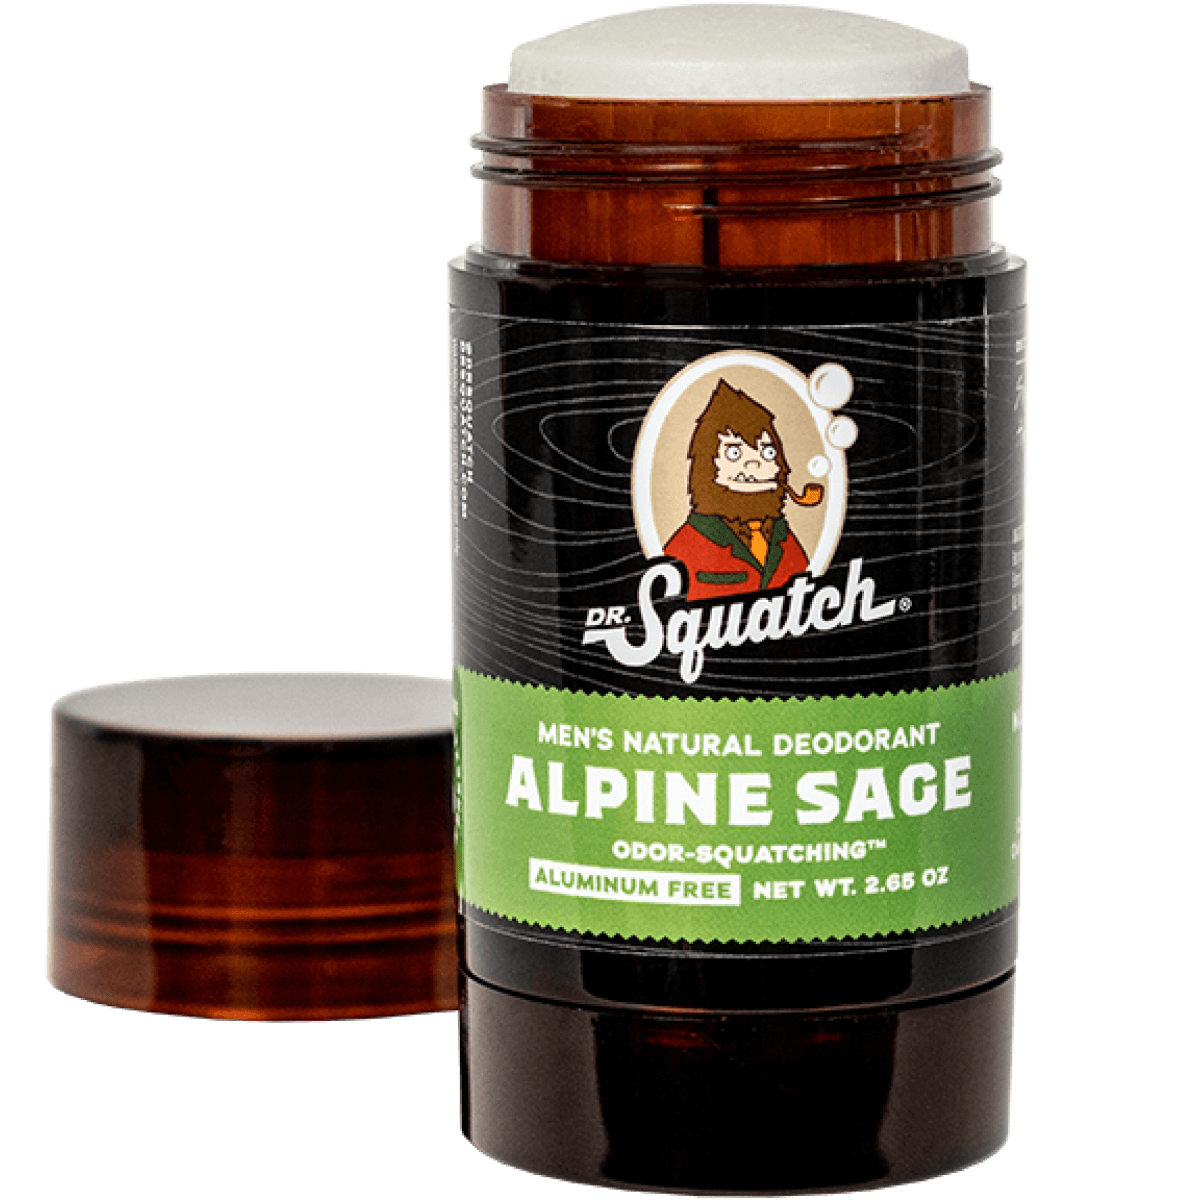 Dr. Squatch Men's Natural Deodorant Alpine Sage